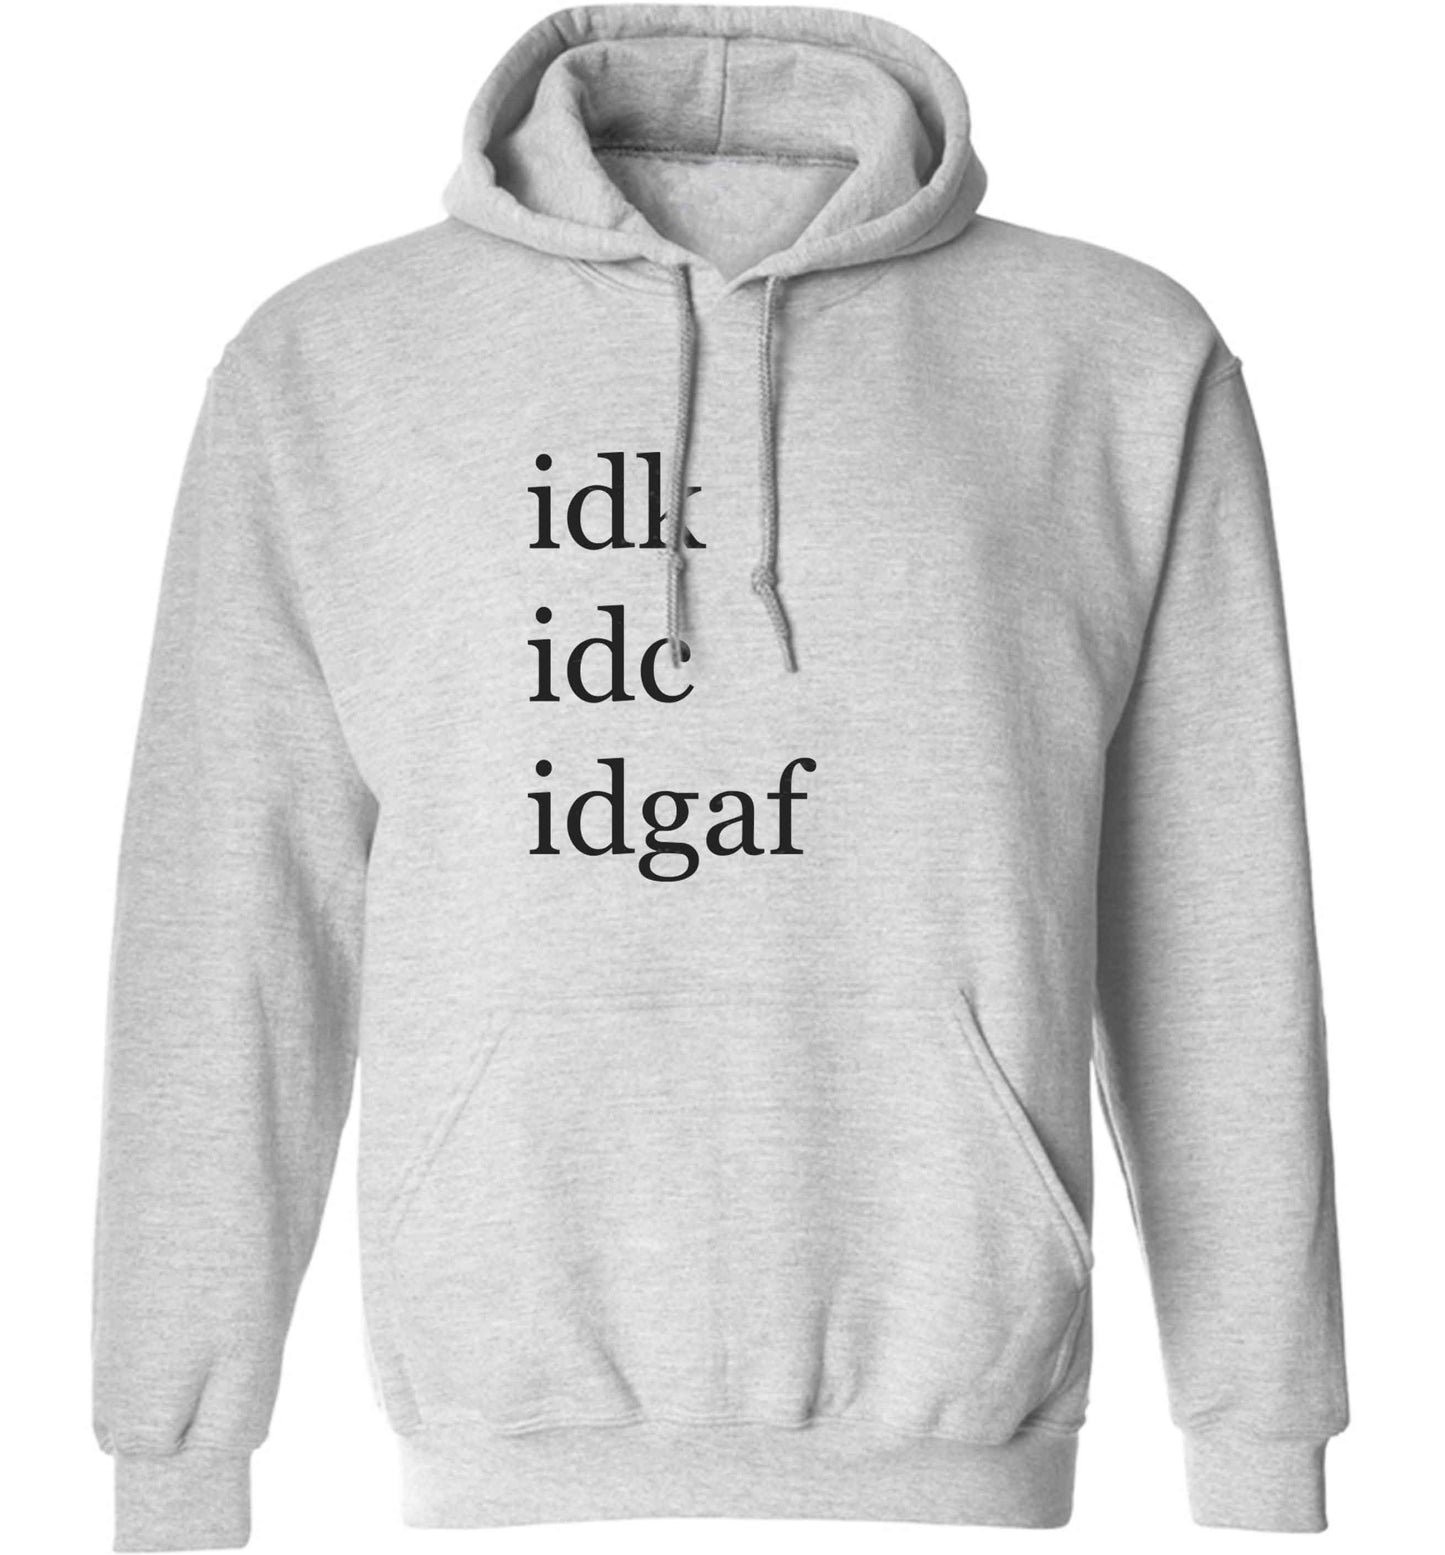 Idk Idc Idgaf adults unisex grey hoodie 2XL